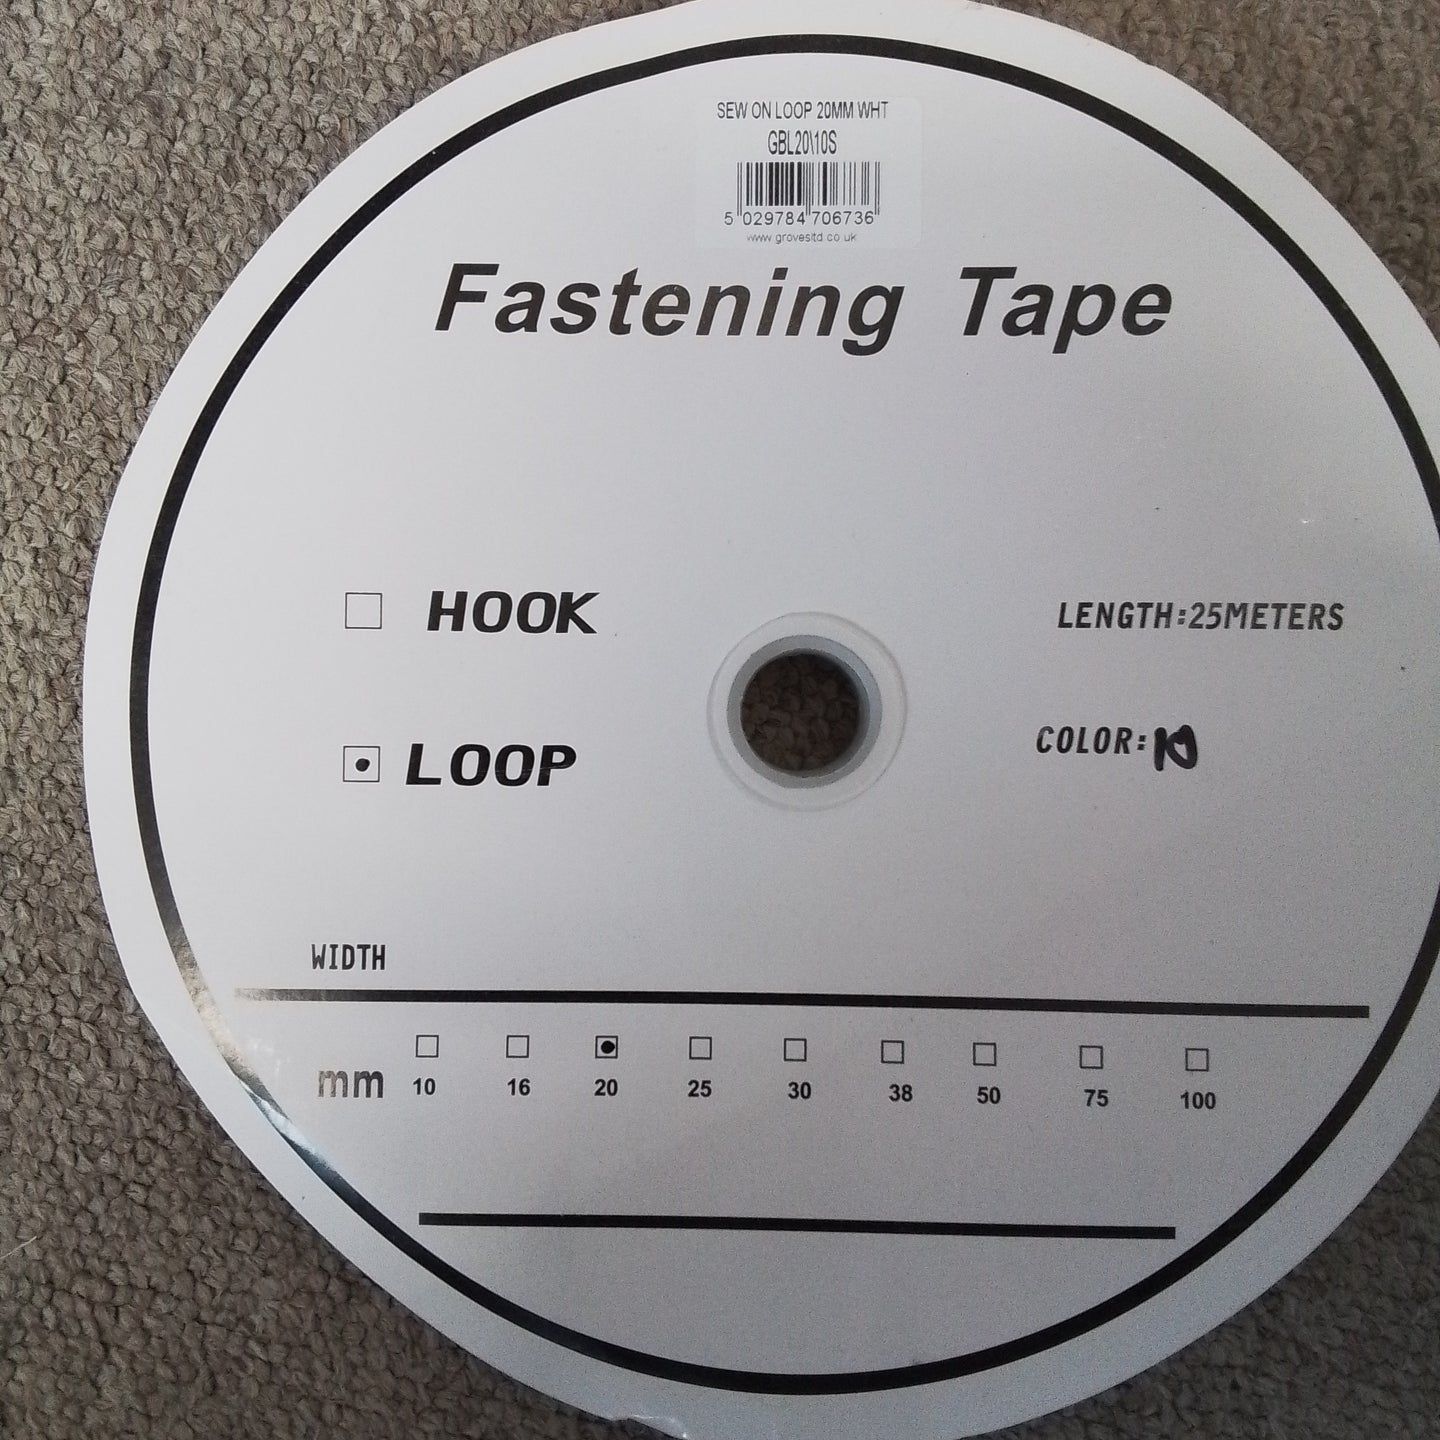 Hook and Loop Fastening Tape